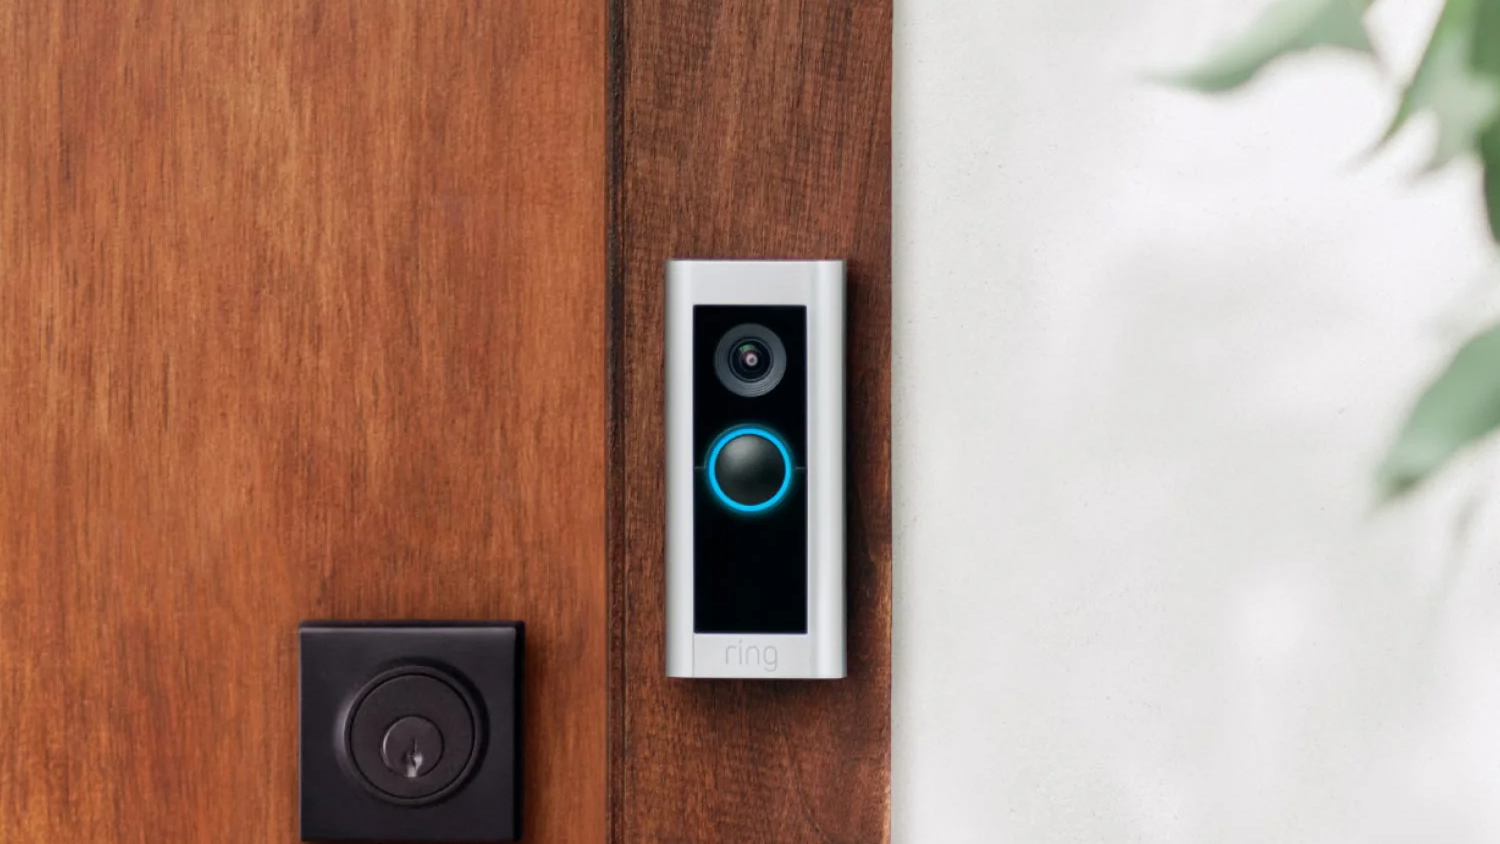 Ring Video Doorbell Pro 2 